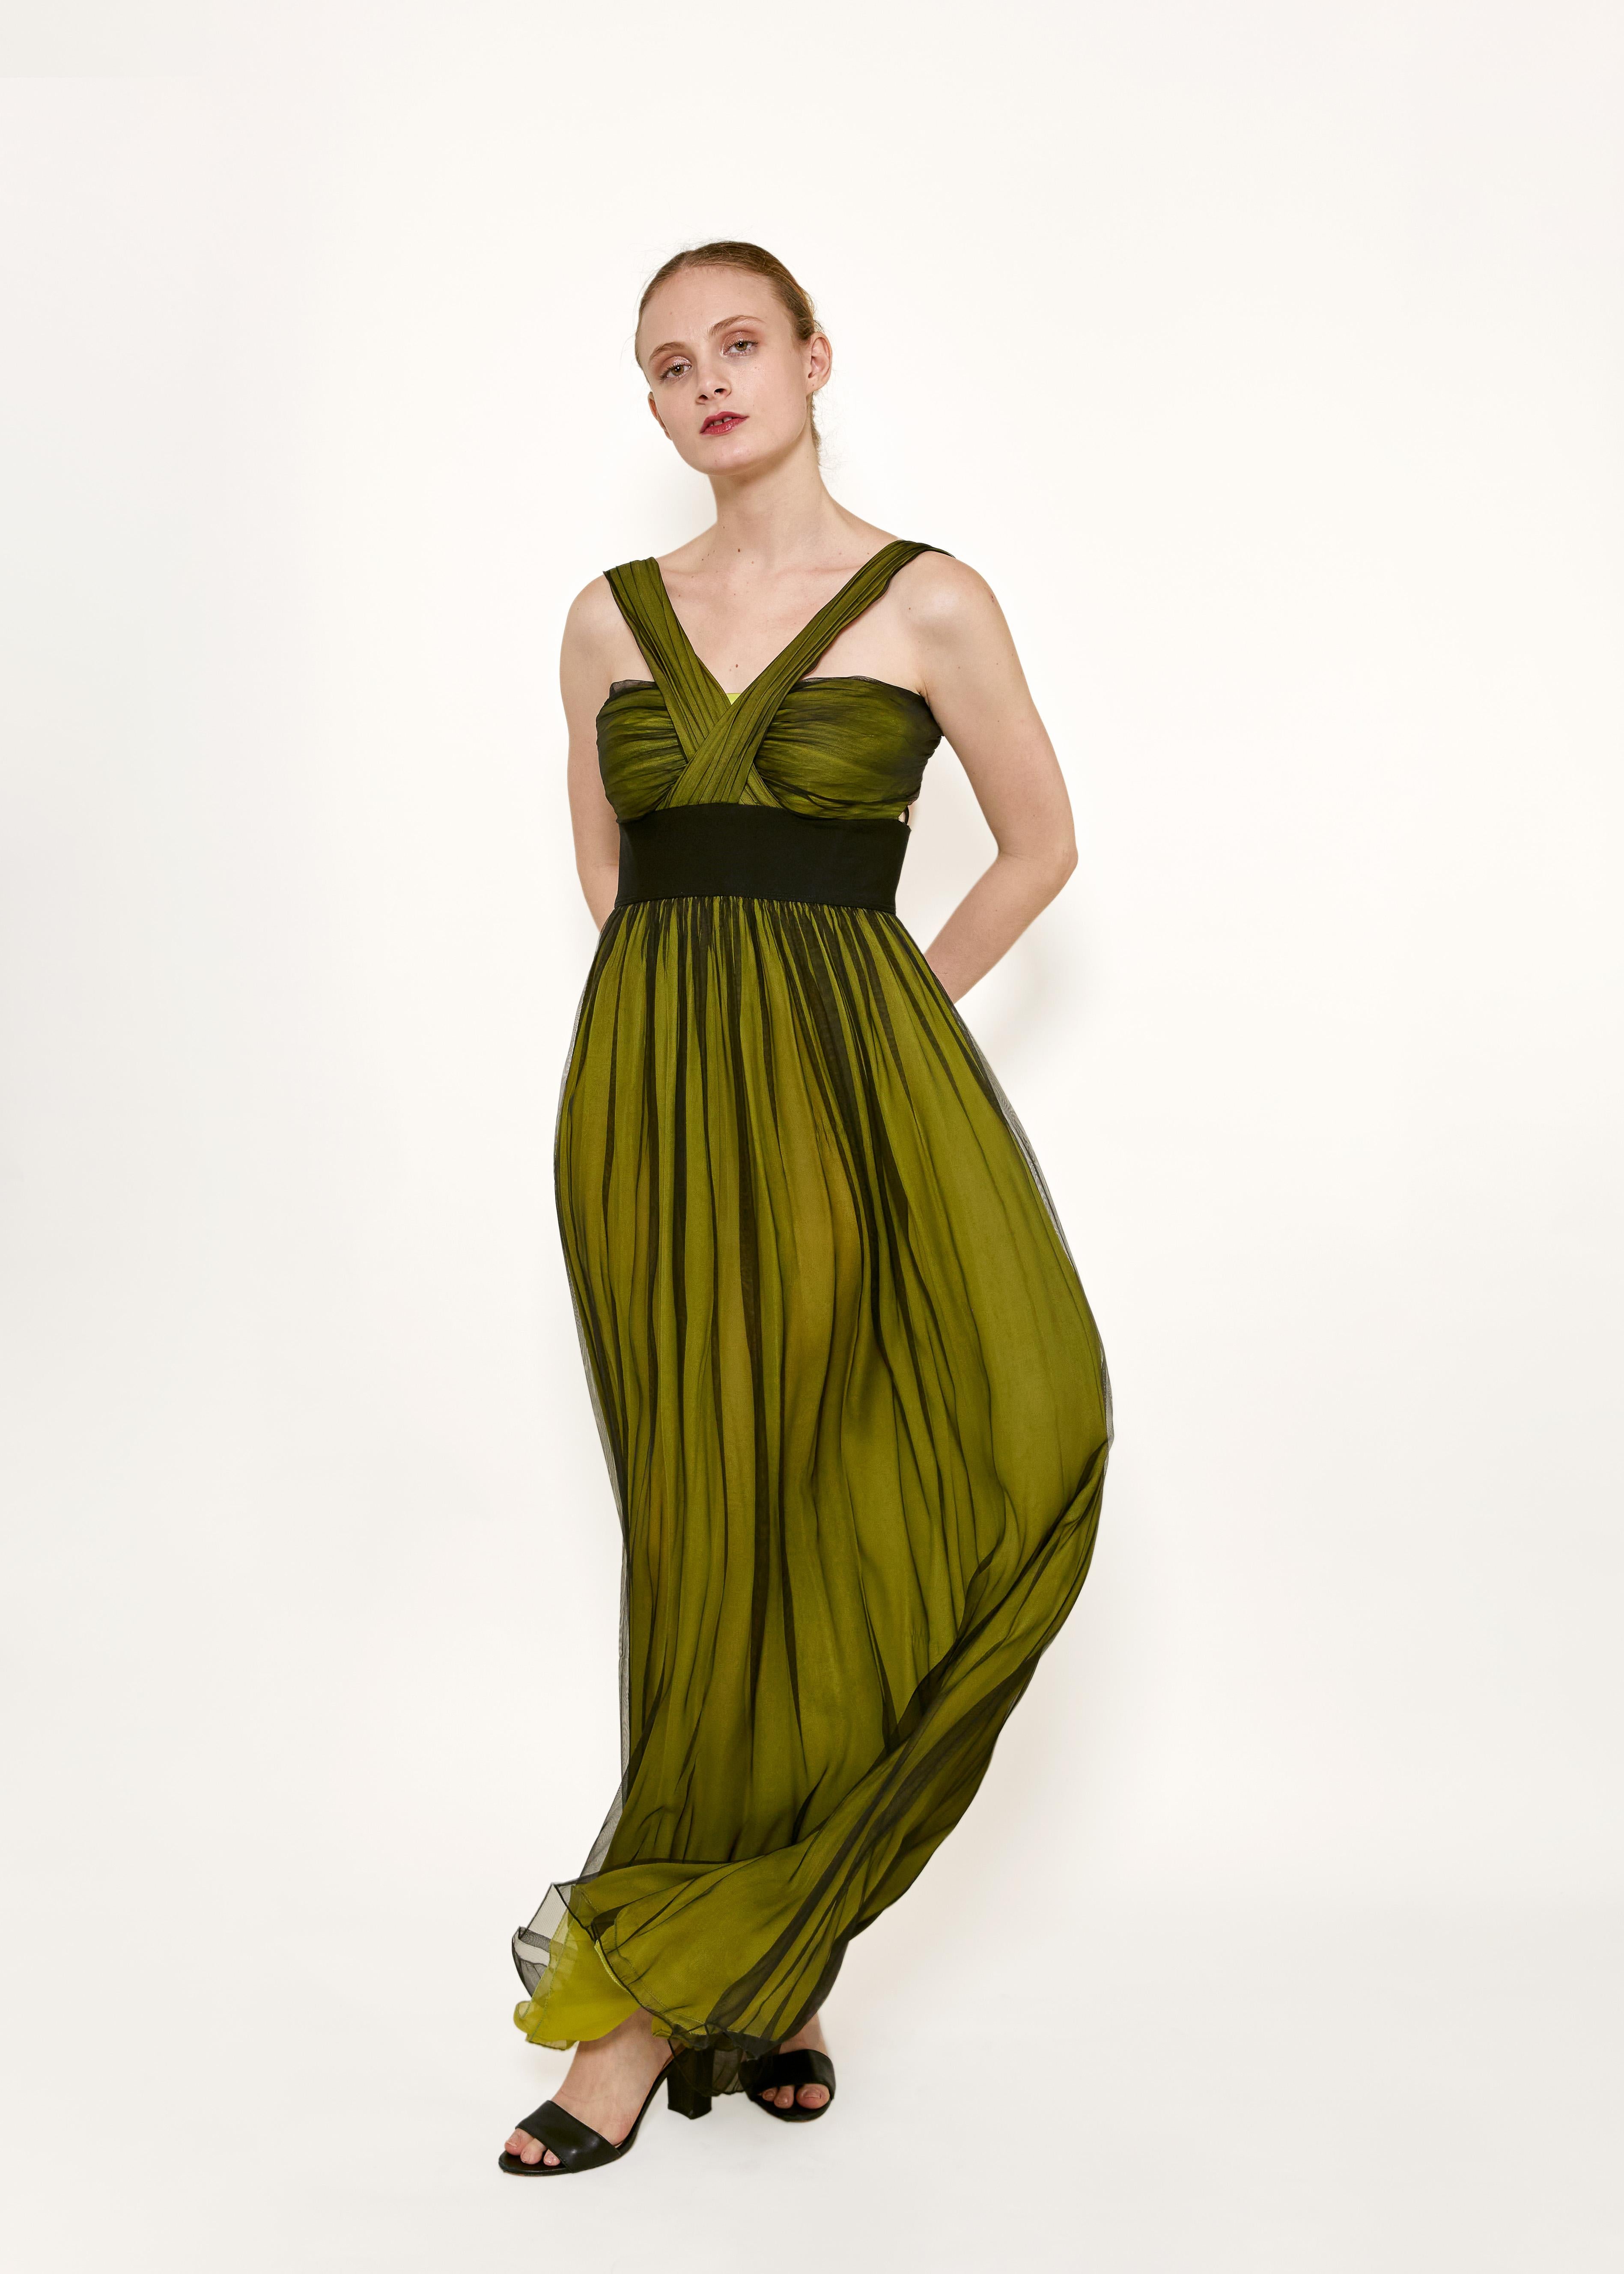 Élevez votre look de soirée avec cette superbe robe en mousseline de soie verte/noire Dolce & Gabbana. Confectionnée en mousseline de soie superposée, cette robe respire le luxe et la sophistication. Le design unique à front croisé ajoute une touche